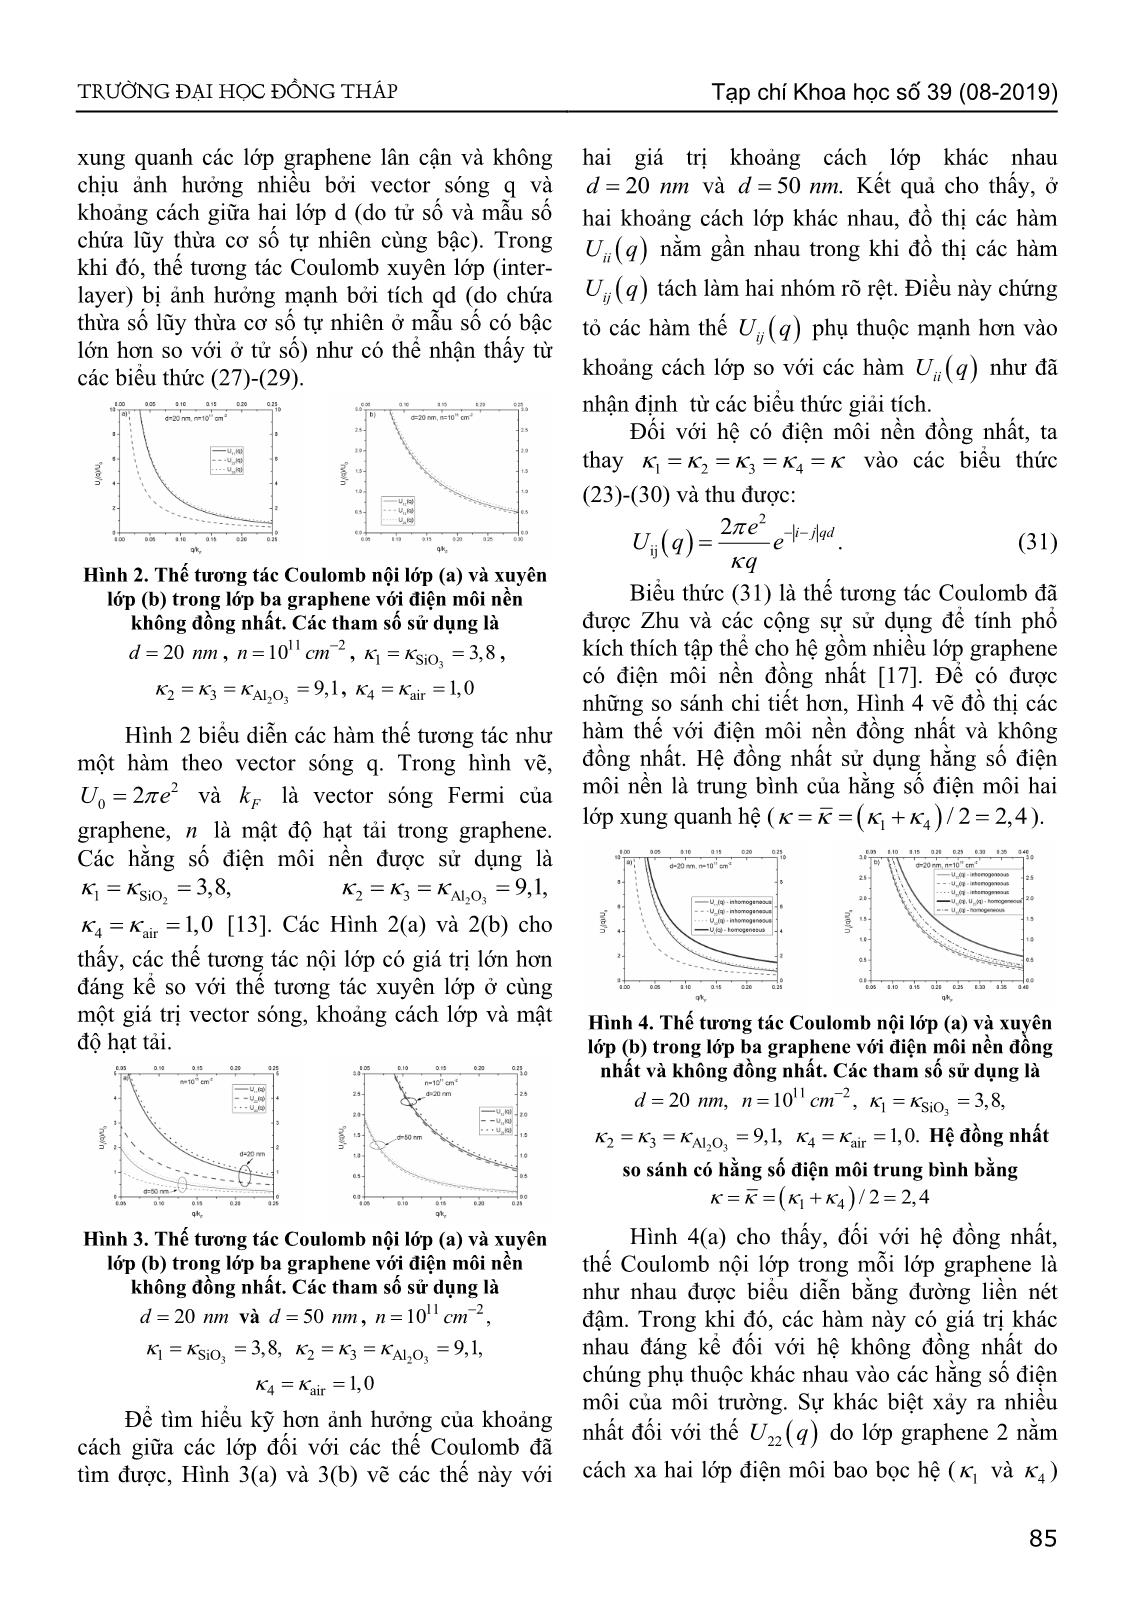 Thế tương tác Coulomb trong lớp ba graphene trang 4